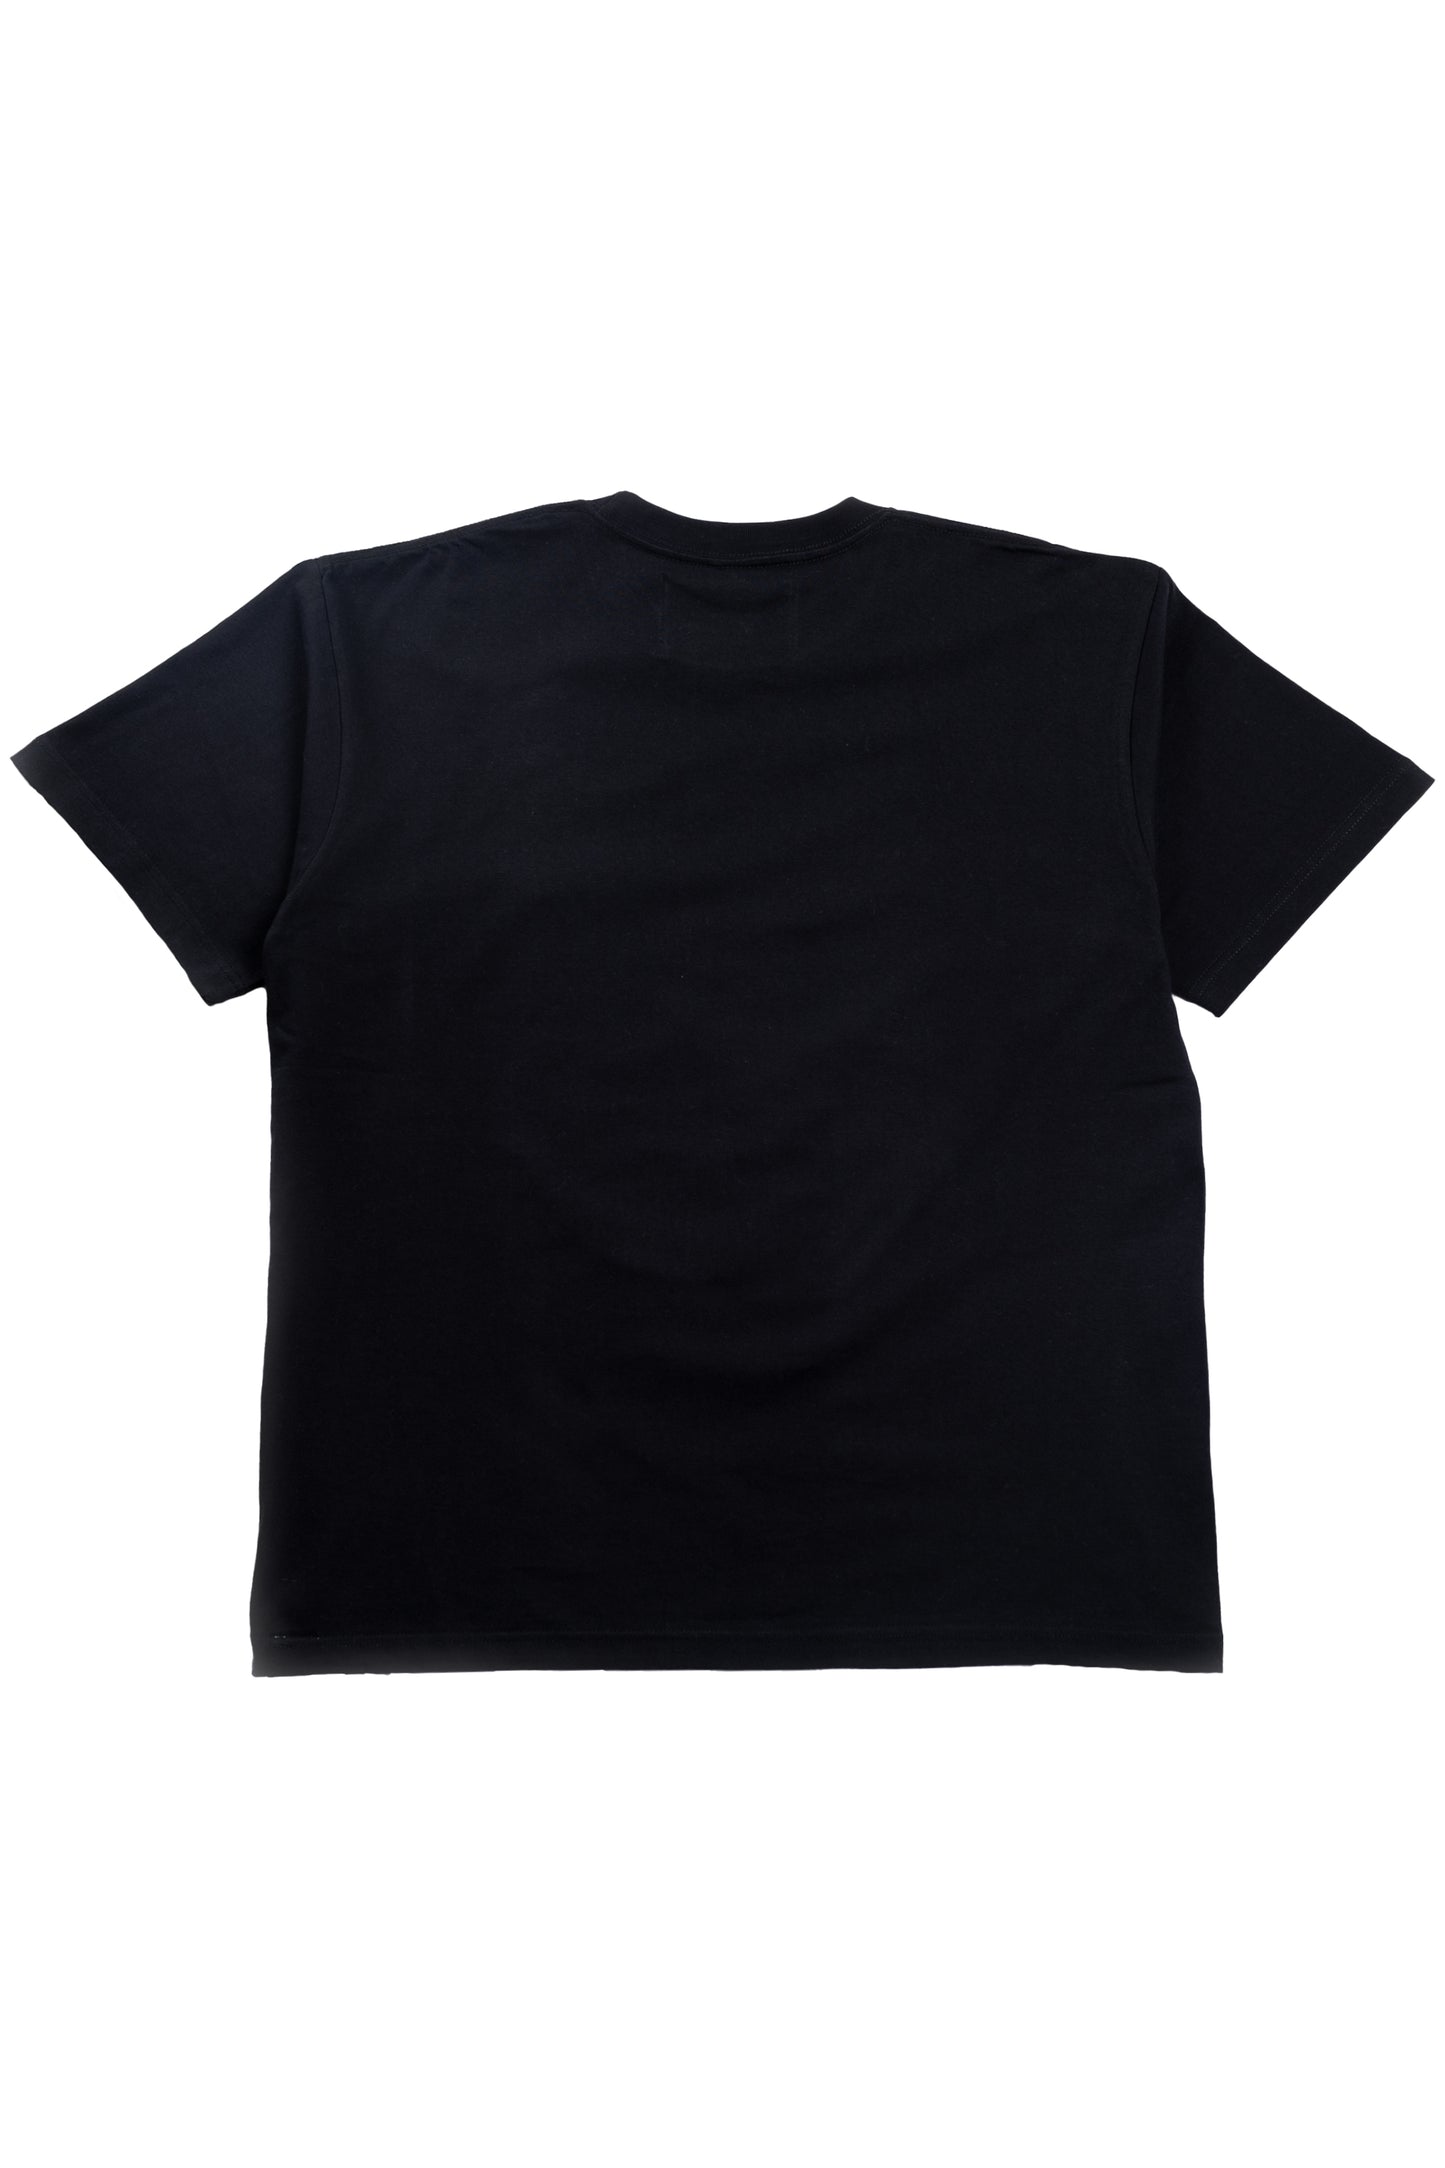 "SNAKE RECTANGLE LOGO" S/S T-shirt [BLACK]